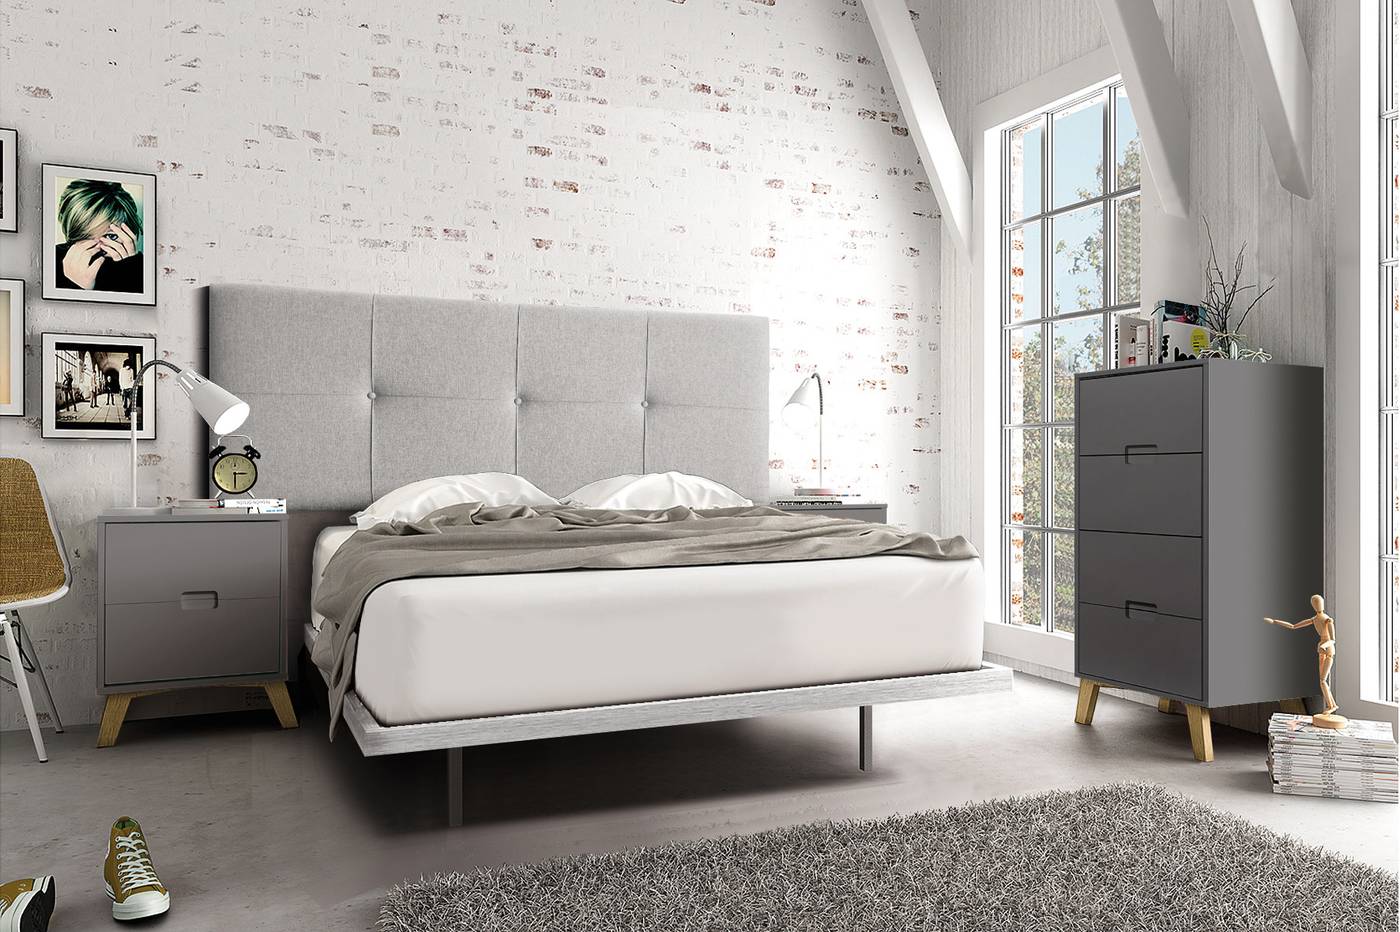 Cabezal Tapizado Gris - Cabezal cama matrimonio, tapizado en tela impermeable color gris